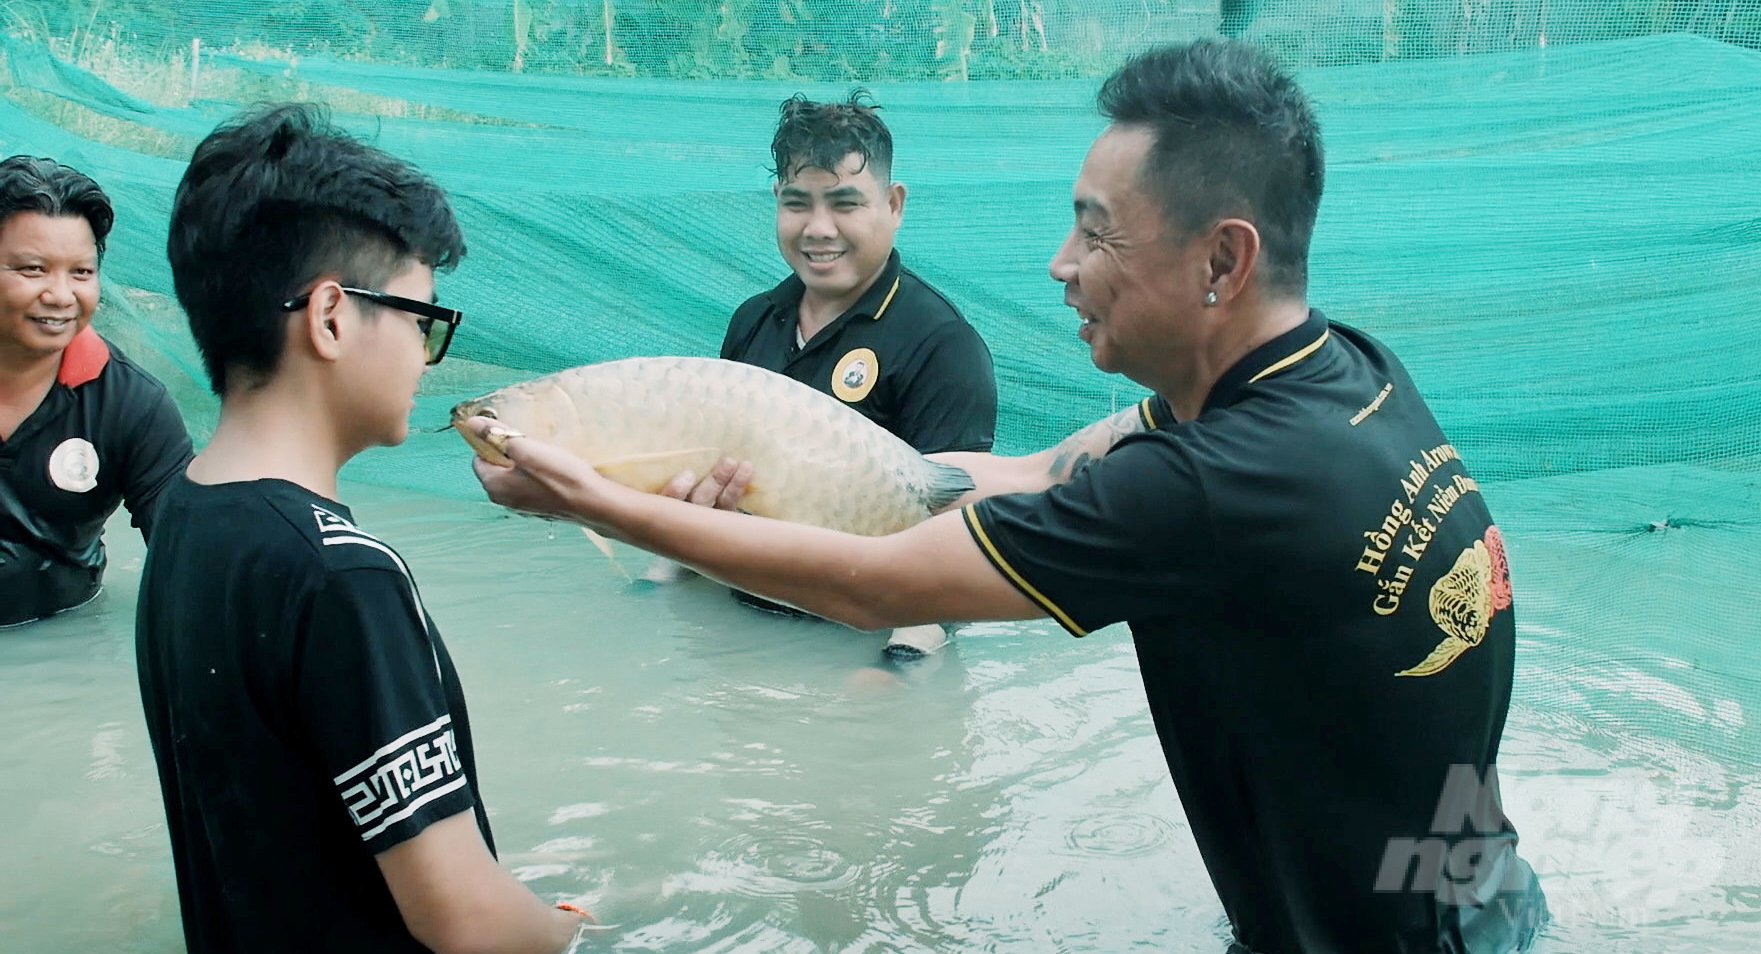 Anh Hoàng Mạnh Long hiện là người Việt Nam duy nhất đang thực hiện kĩ thuật bắt cá Rồng đẻ trứng, giảm phụ thuộc vào nhập cá từ nước ngoài. Ảnh: Lê Bình.